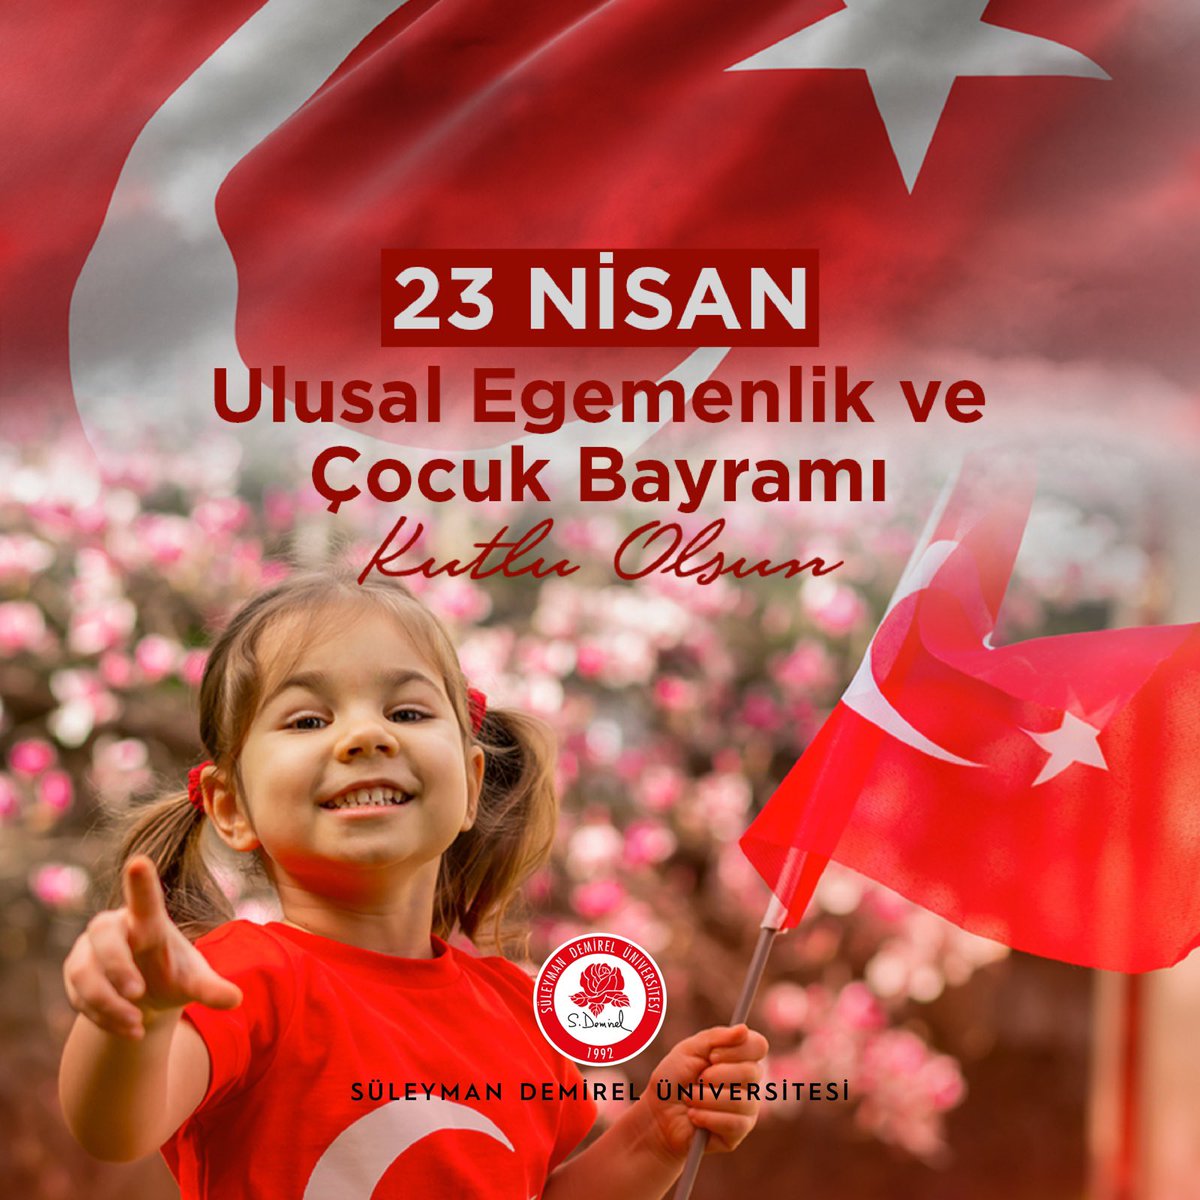 23 Nisan Ulusal Egemenlik ve Çocuk Bayramınız kutlu olsun 🇹🇷🇹🇷🎈 Happy April 23rd National Sovereignty and Children’s Day🇹🇷🇹🇷🎈 #23nisanulusalegemenlikveçocukbayramı #23nisan